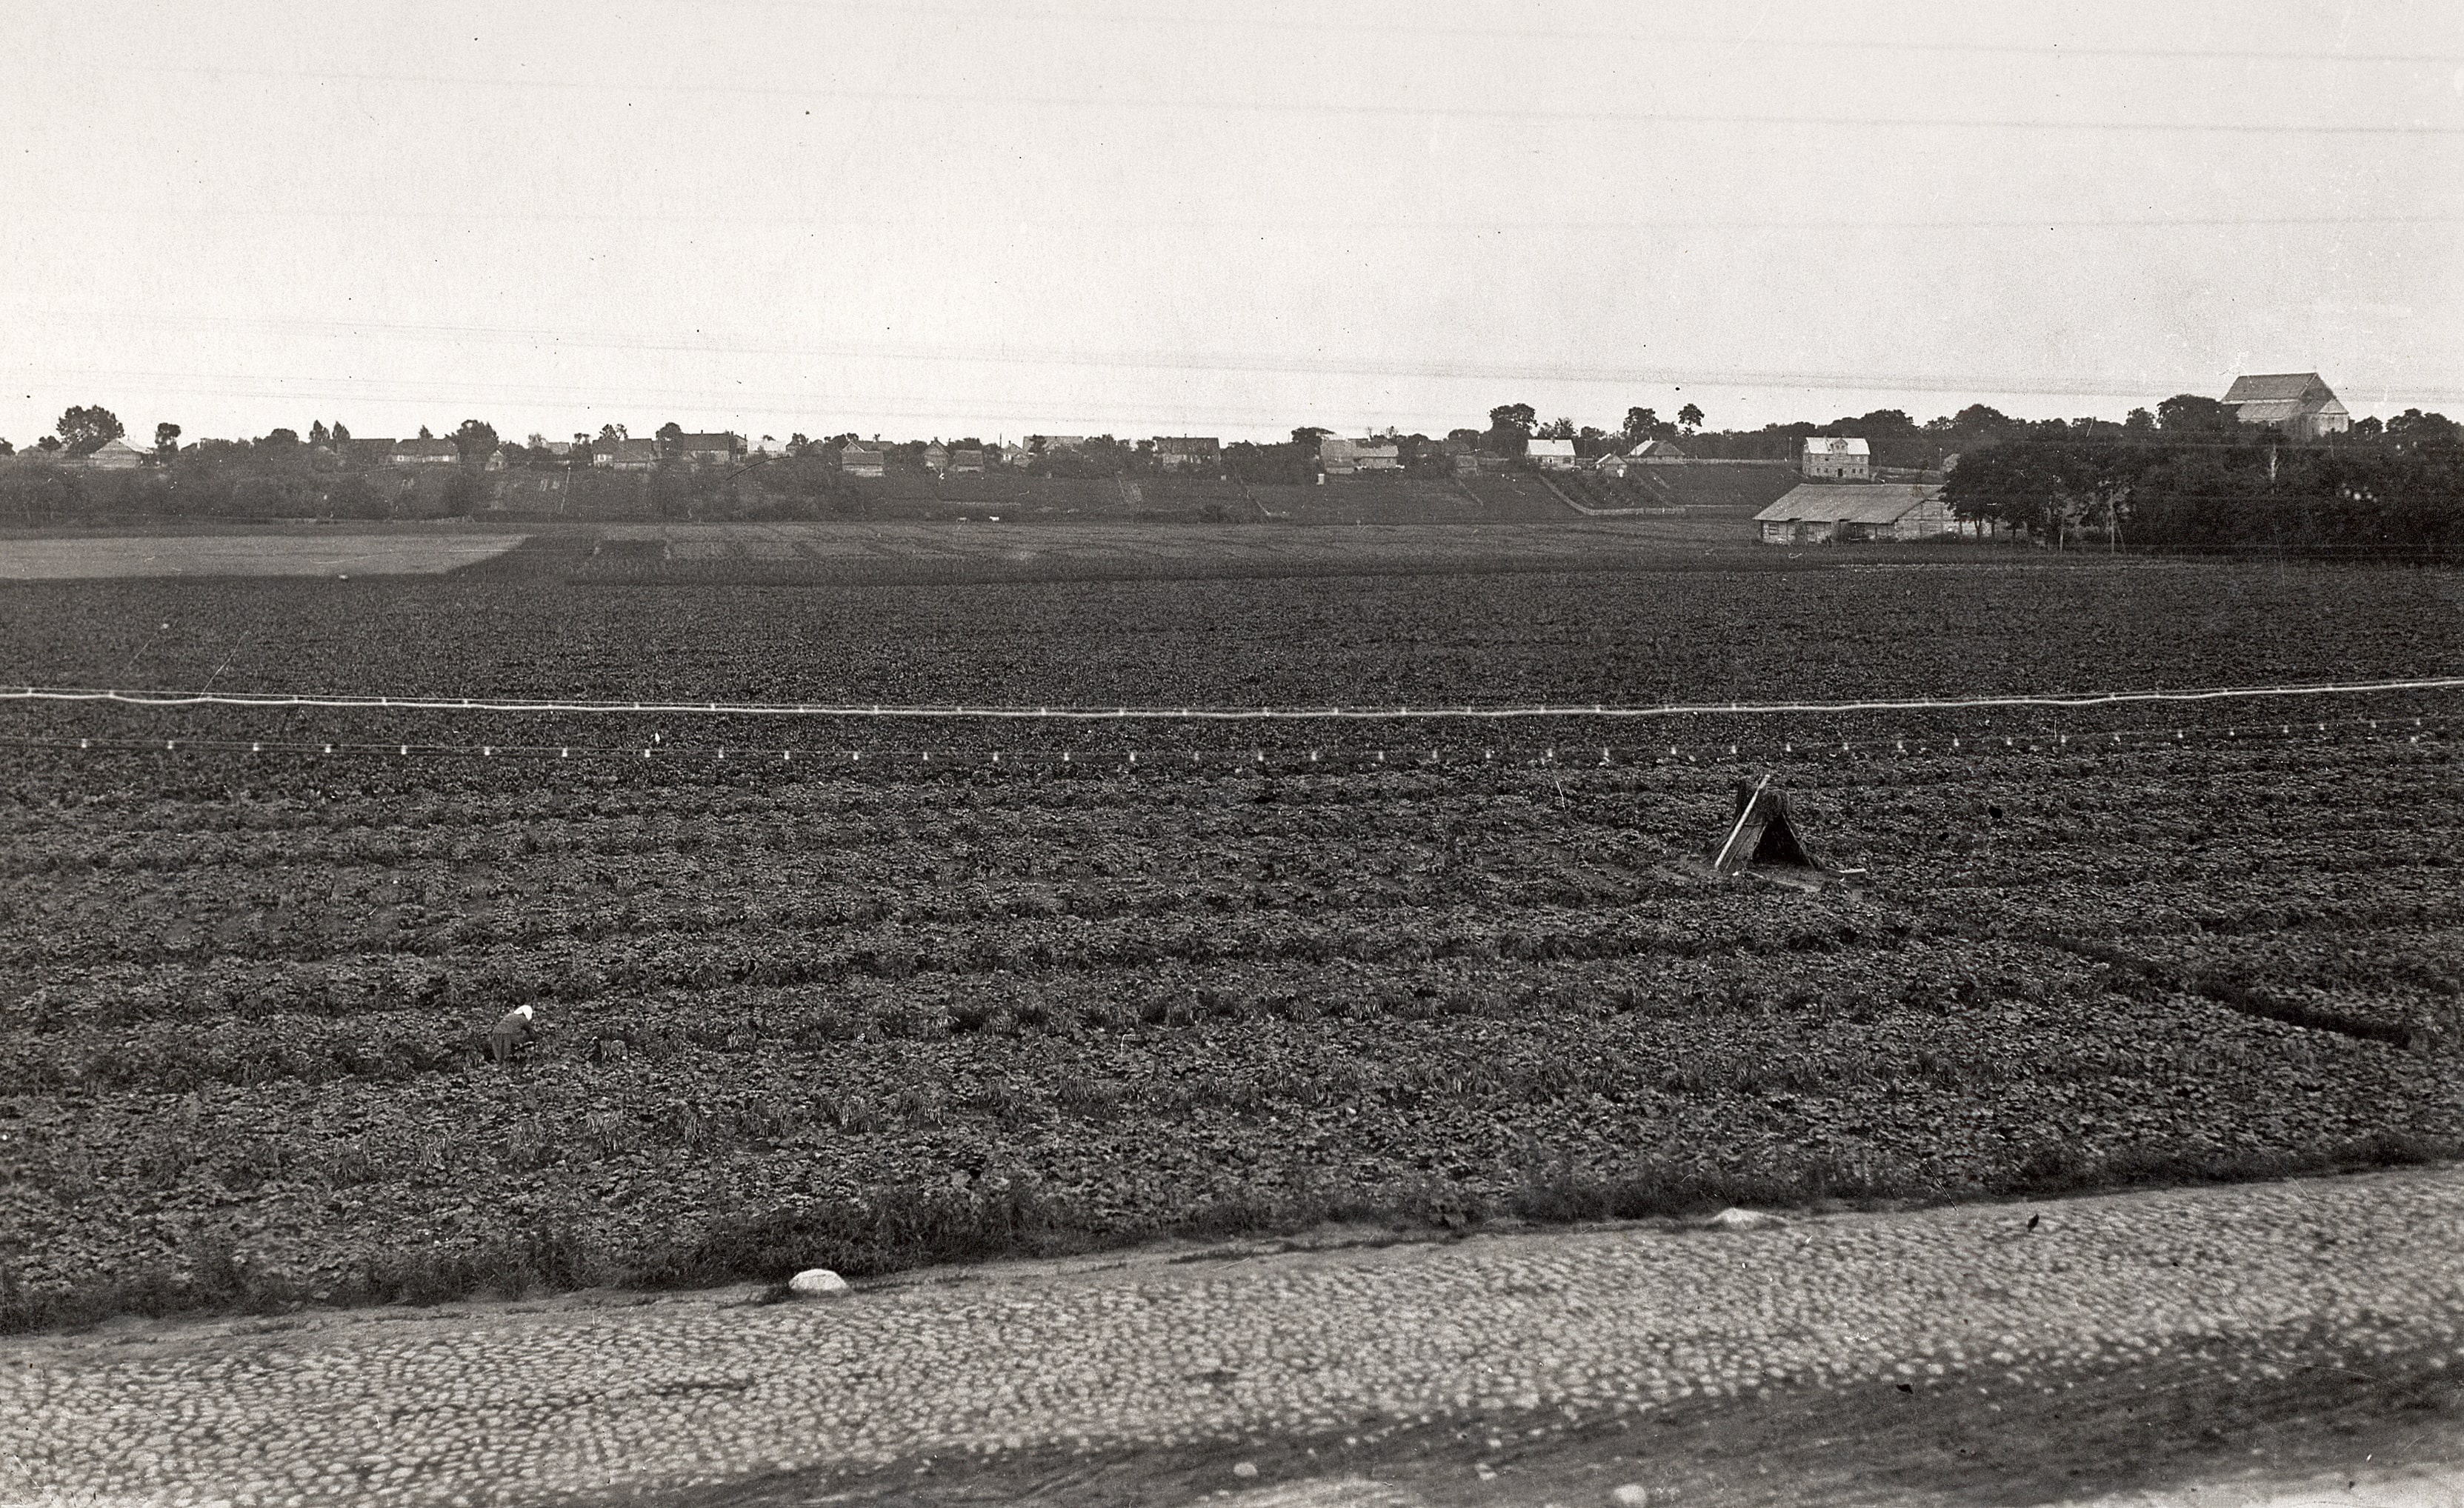 Agurkų laukai buvusio Juozapavos palivarko laukuose (dabar P.Lukšio ir J. Žemaitės gatvių rajonas), XX a. 4 deš.